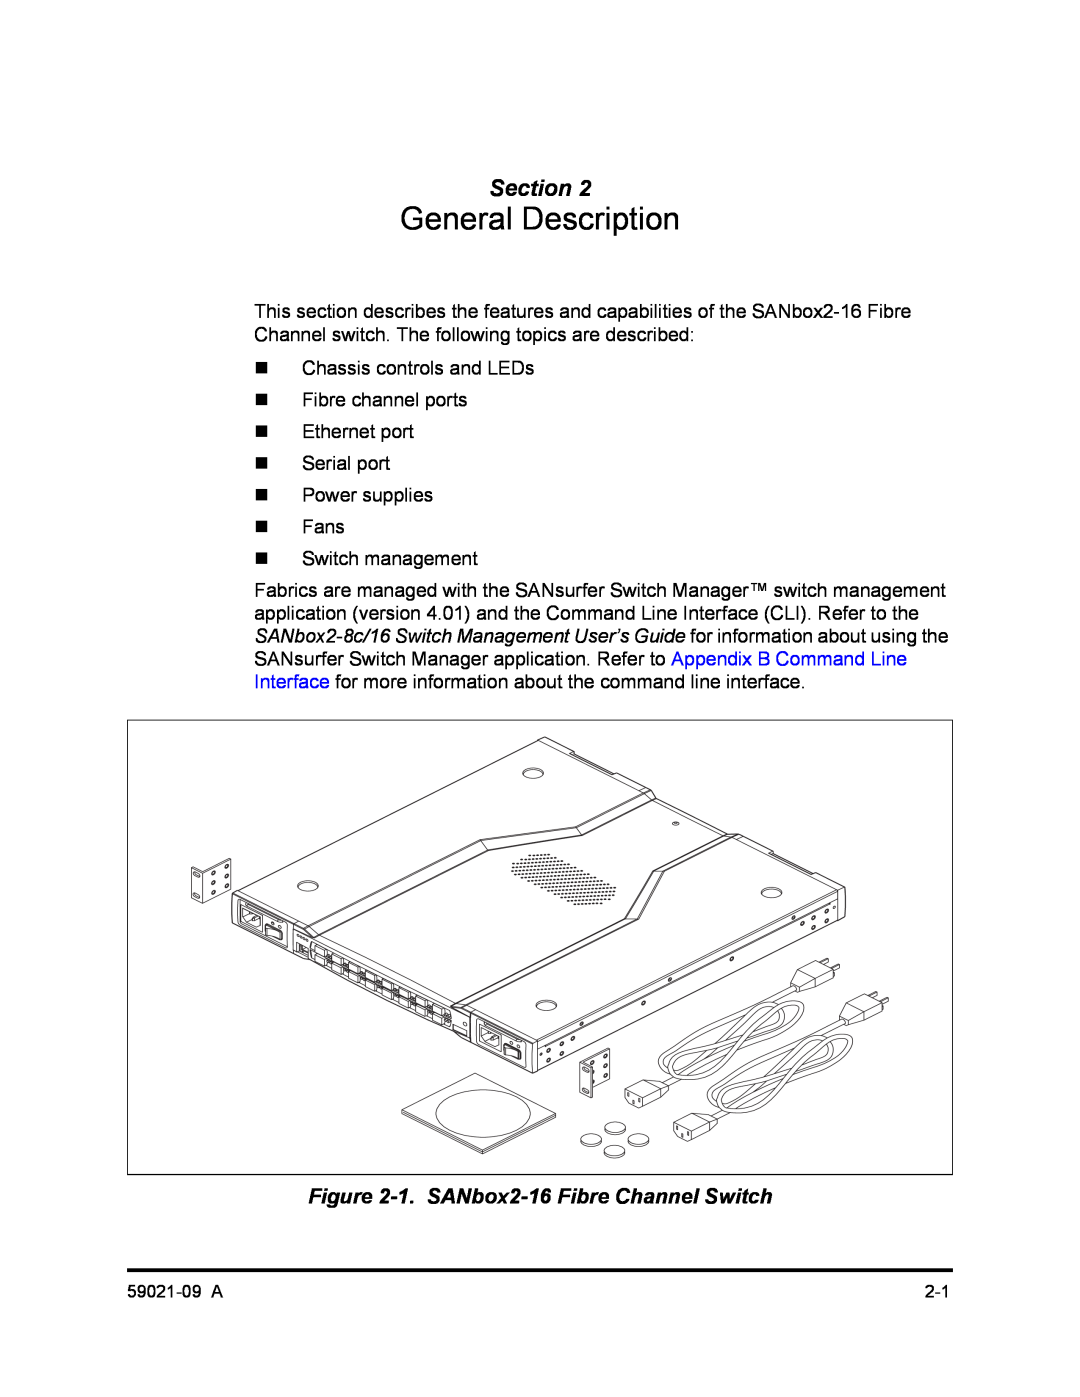 Q-Logic SB2A-16B, QLA2342 manual General Description, 1. SANbox2-16 Fibre Channel Switch, Section 